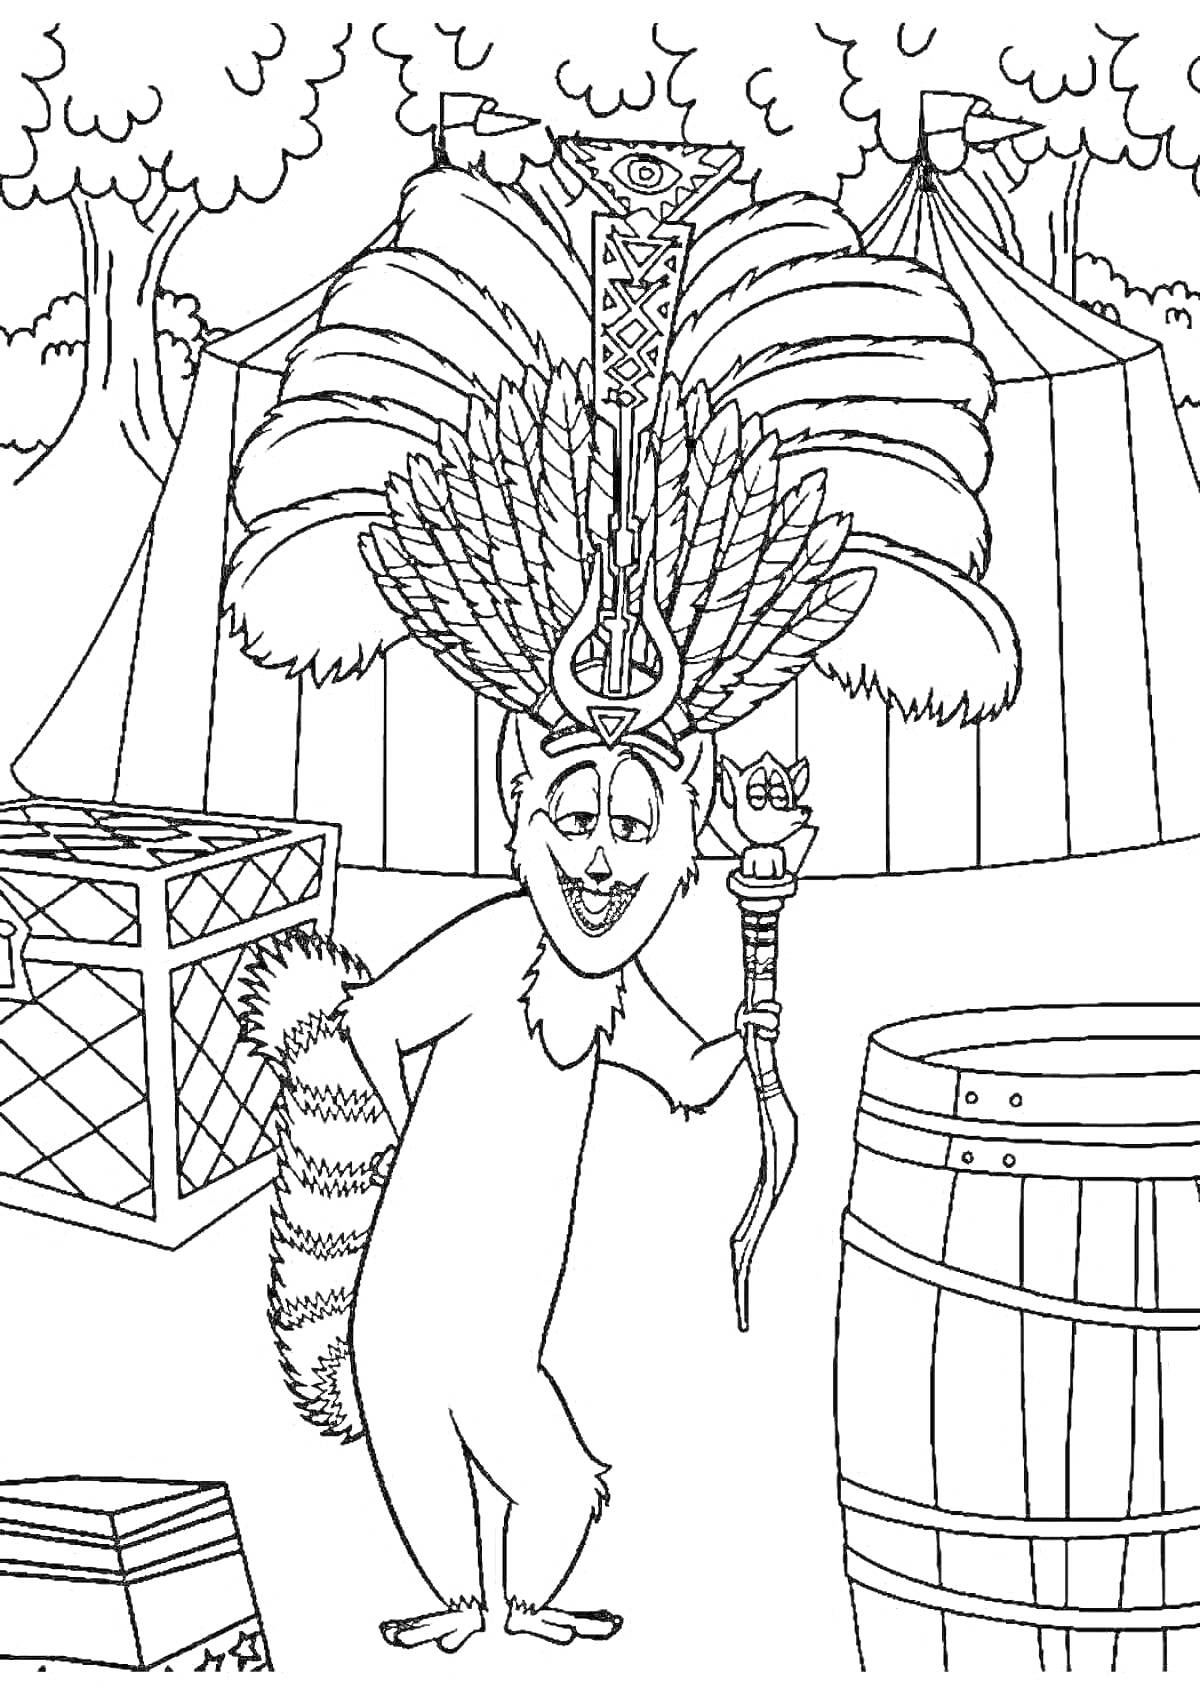 Раскраска Лемур с посохом и головным убором из перьев на фоне ящиков, бочек и циркового шатра